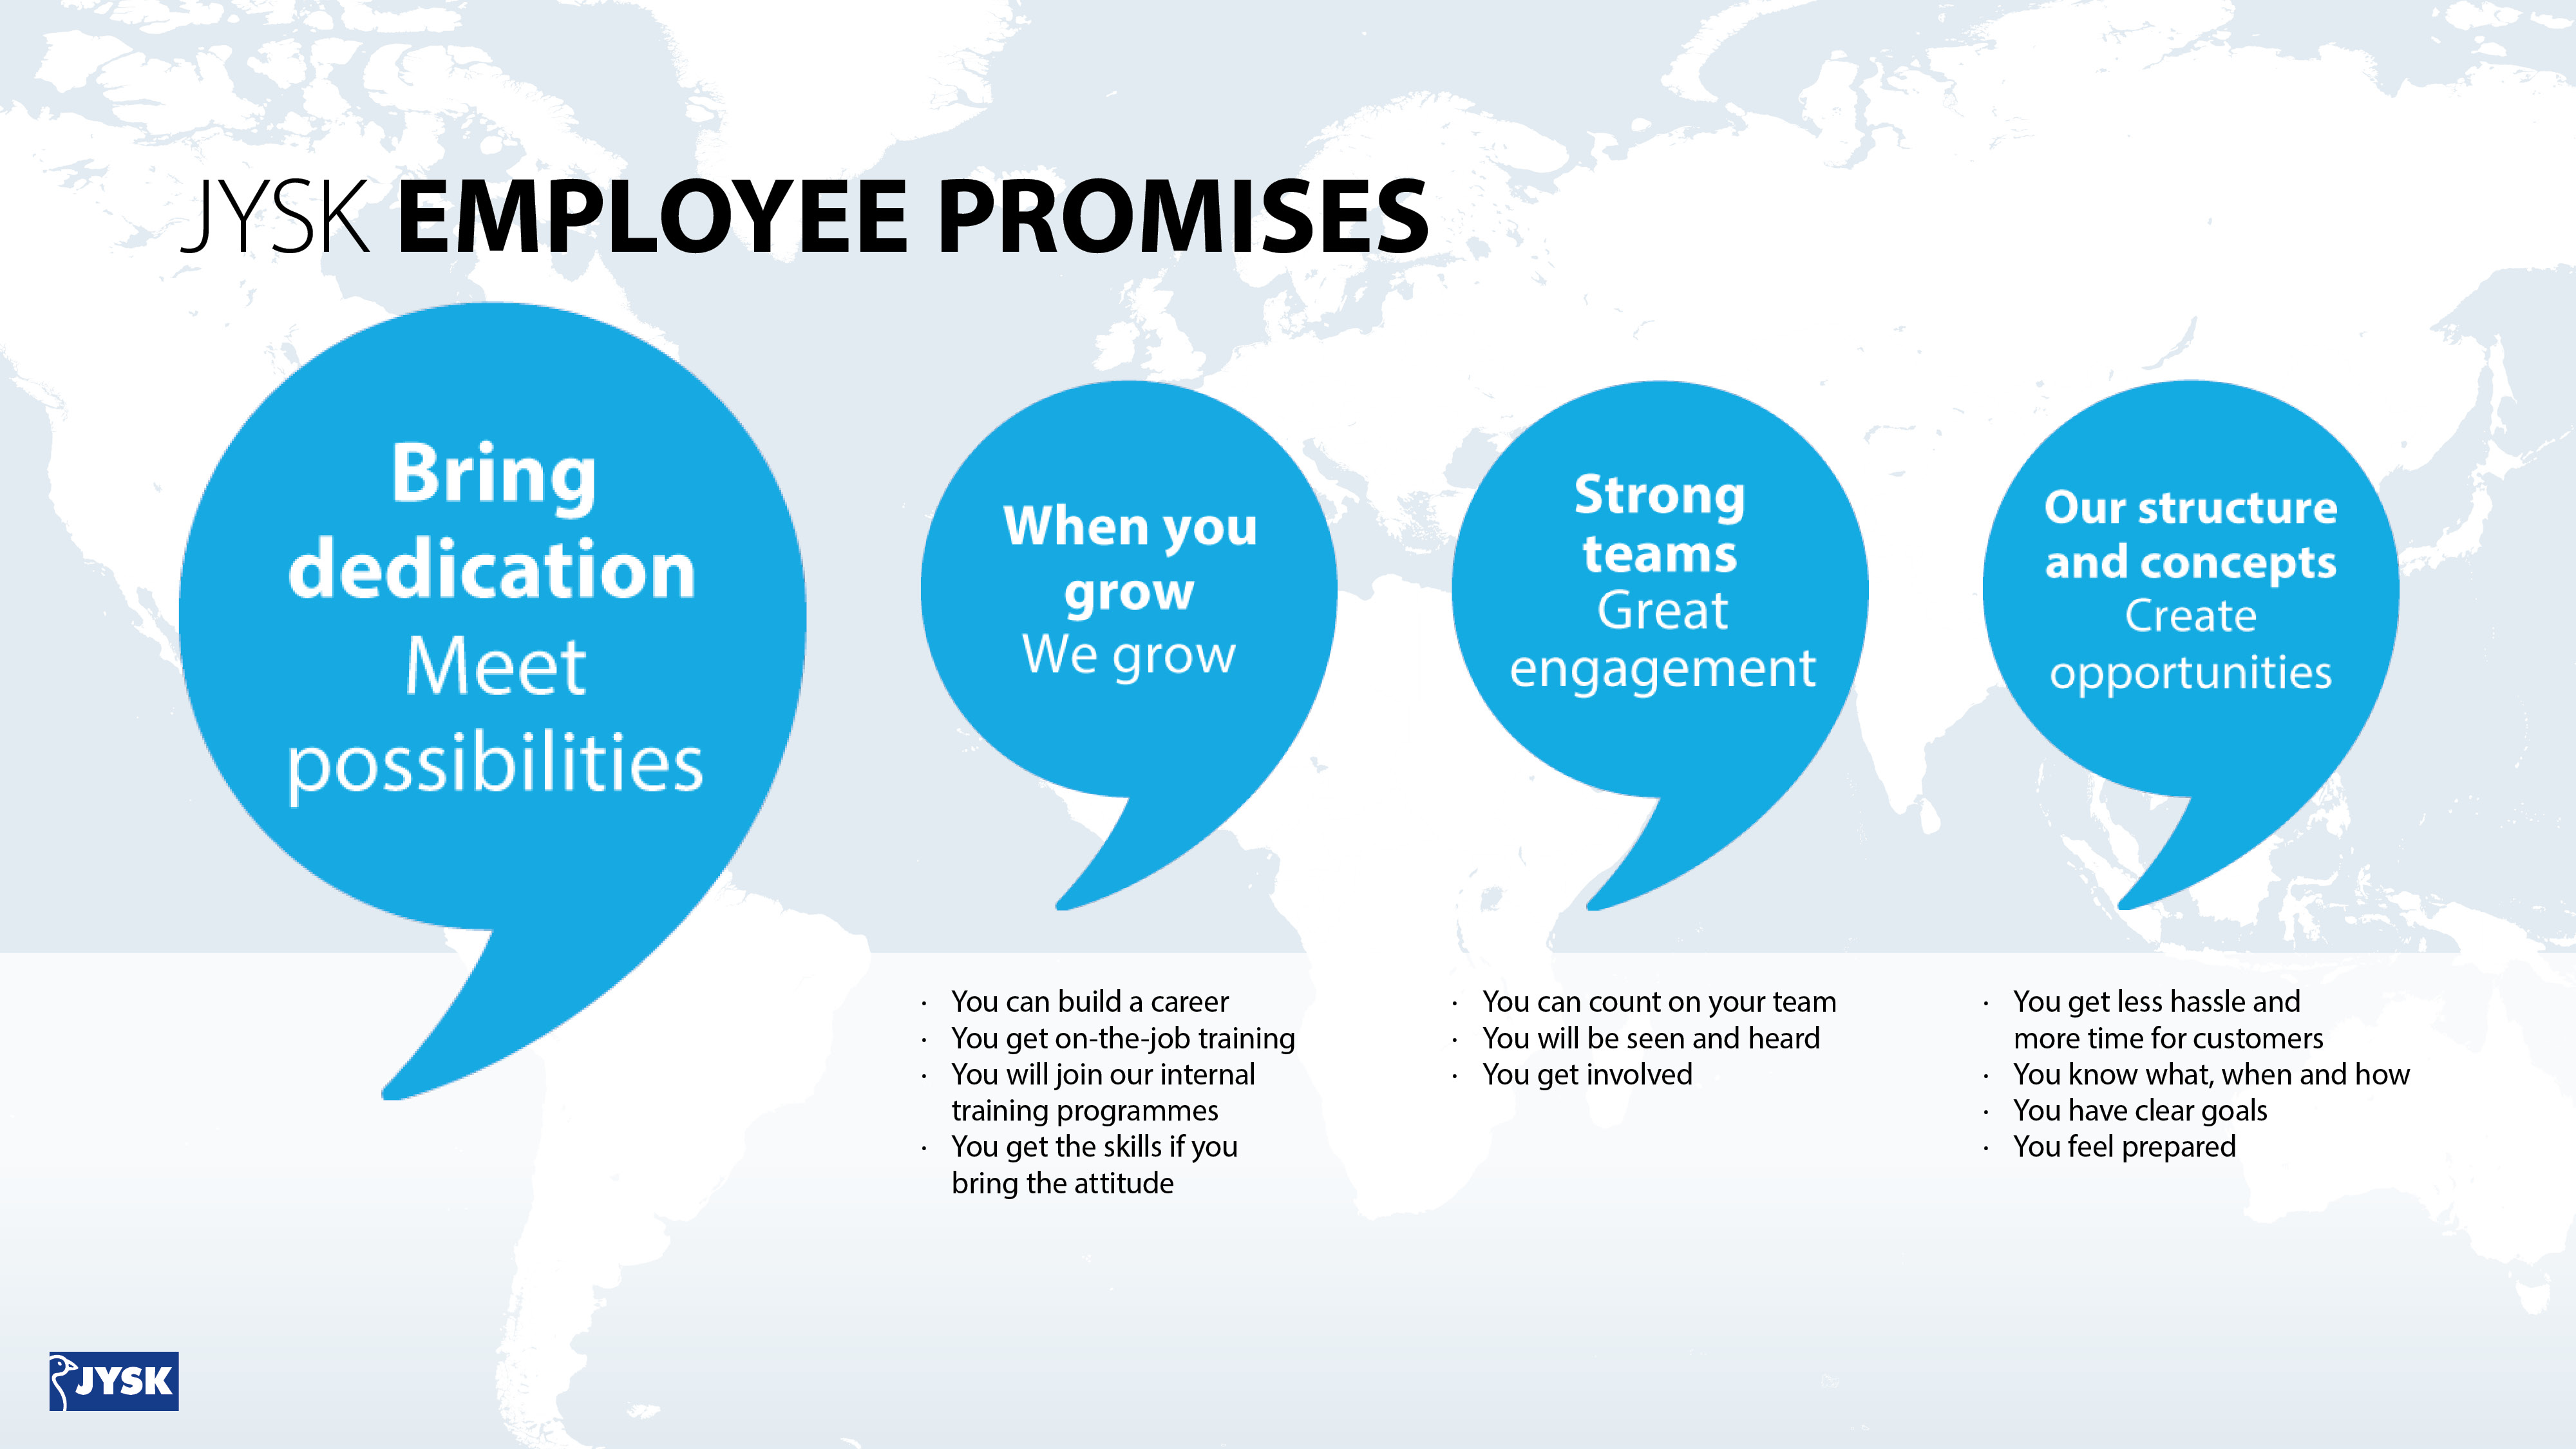 Employee promises